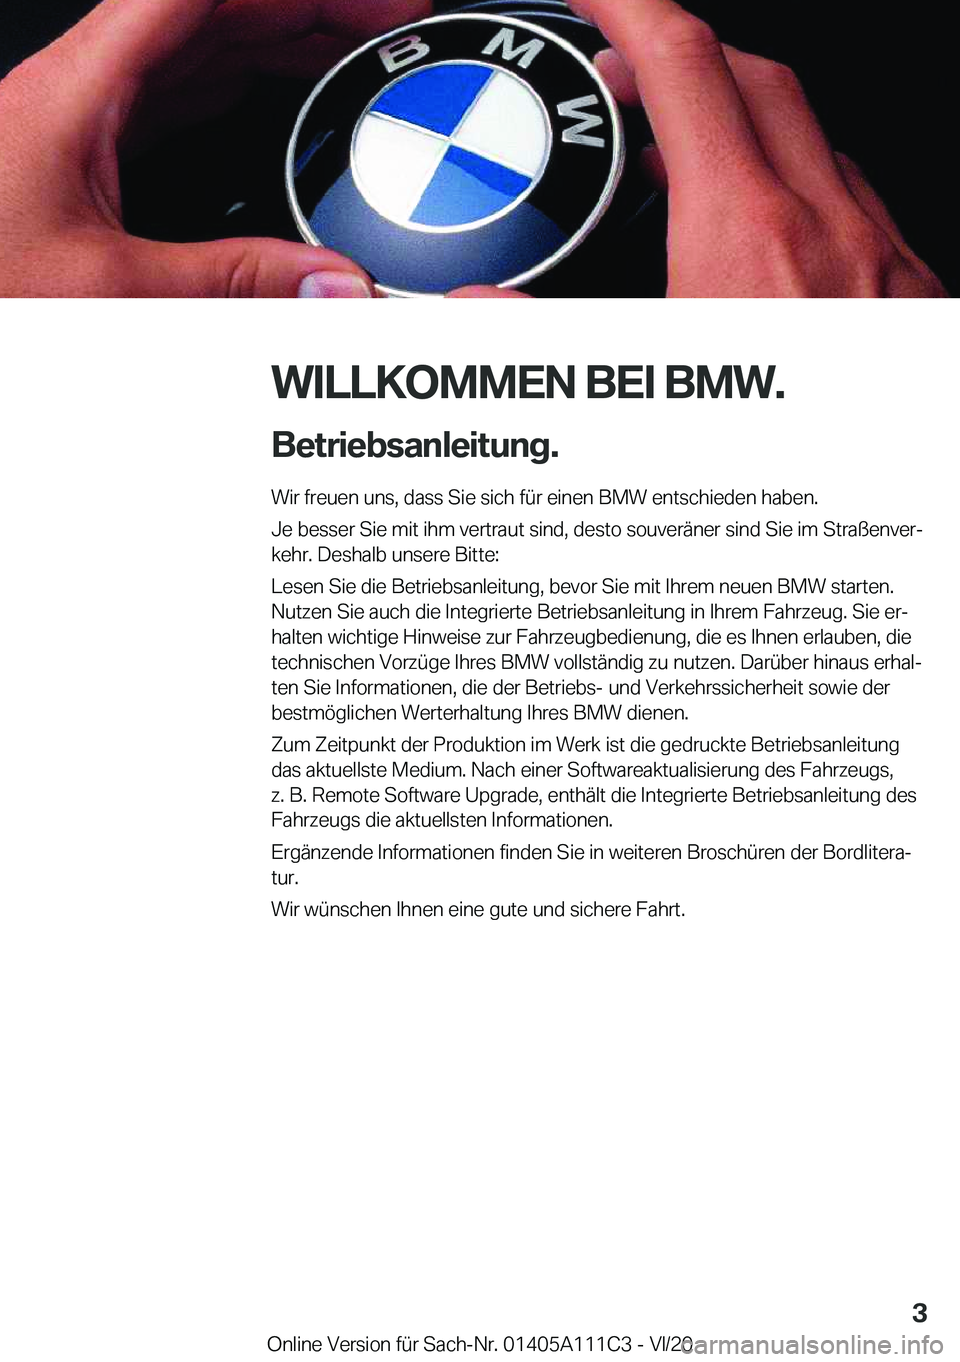 BMW 3 SERIES SEDAN PLUG-IN HYBRID 2021  Betriebsanleitungen (in German) �W�I�L�L�K�O�M�M�E�N��B�E�I��B�M�W�.�B�e�t�r�i�e�b�s�a�n�l�e�i�t�u�n�g�. �W�i�r��f�r�e�u�e�n��u�n�s�,��d�a�s�s��S�i�e��s�i�c�h��f�